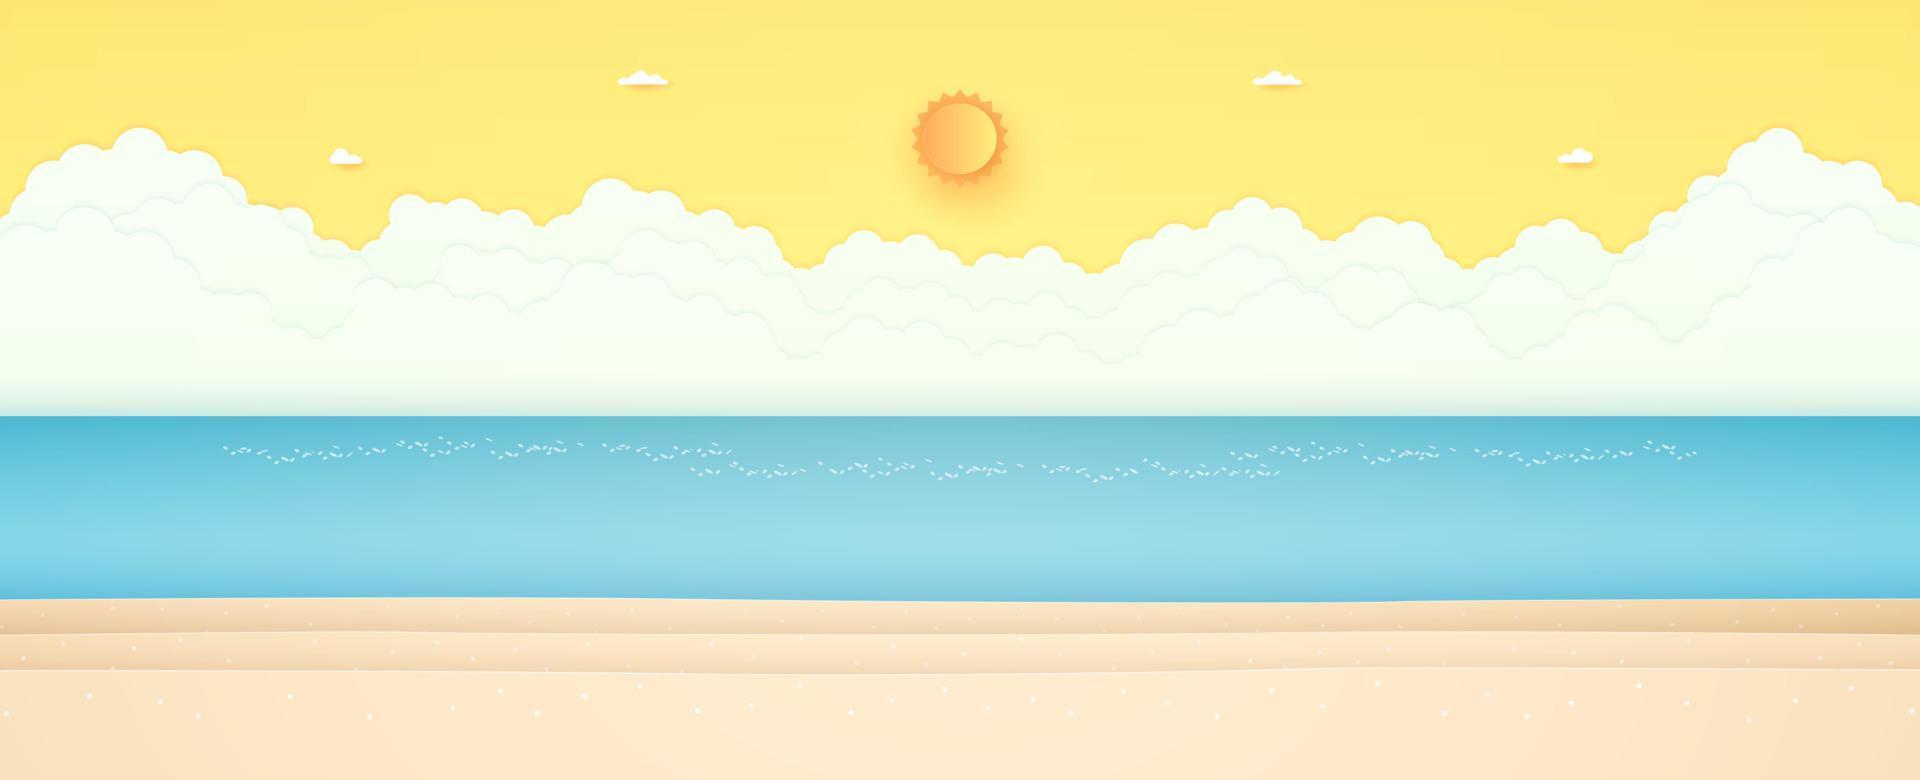 sommartid, havslandskap, landskap, blått hav med strand, strålande sol och orange solig himmel, papper konststil vektor